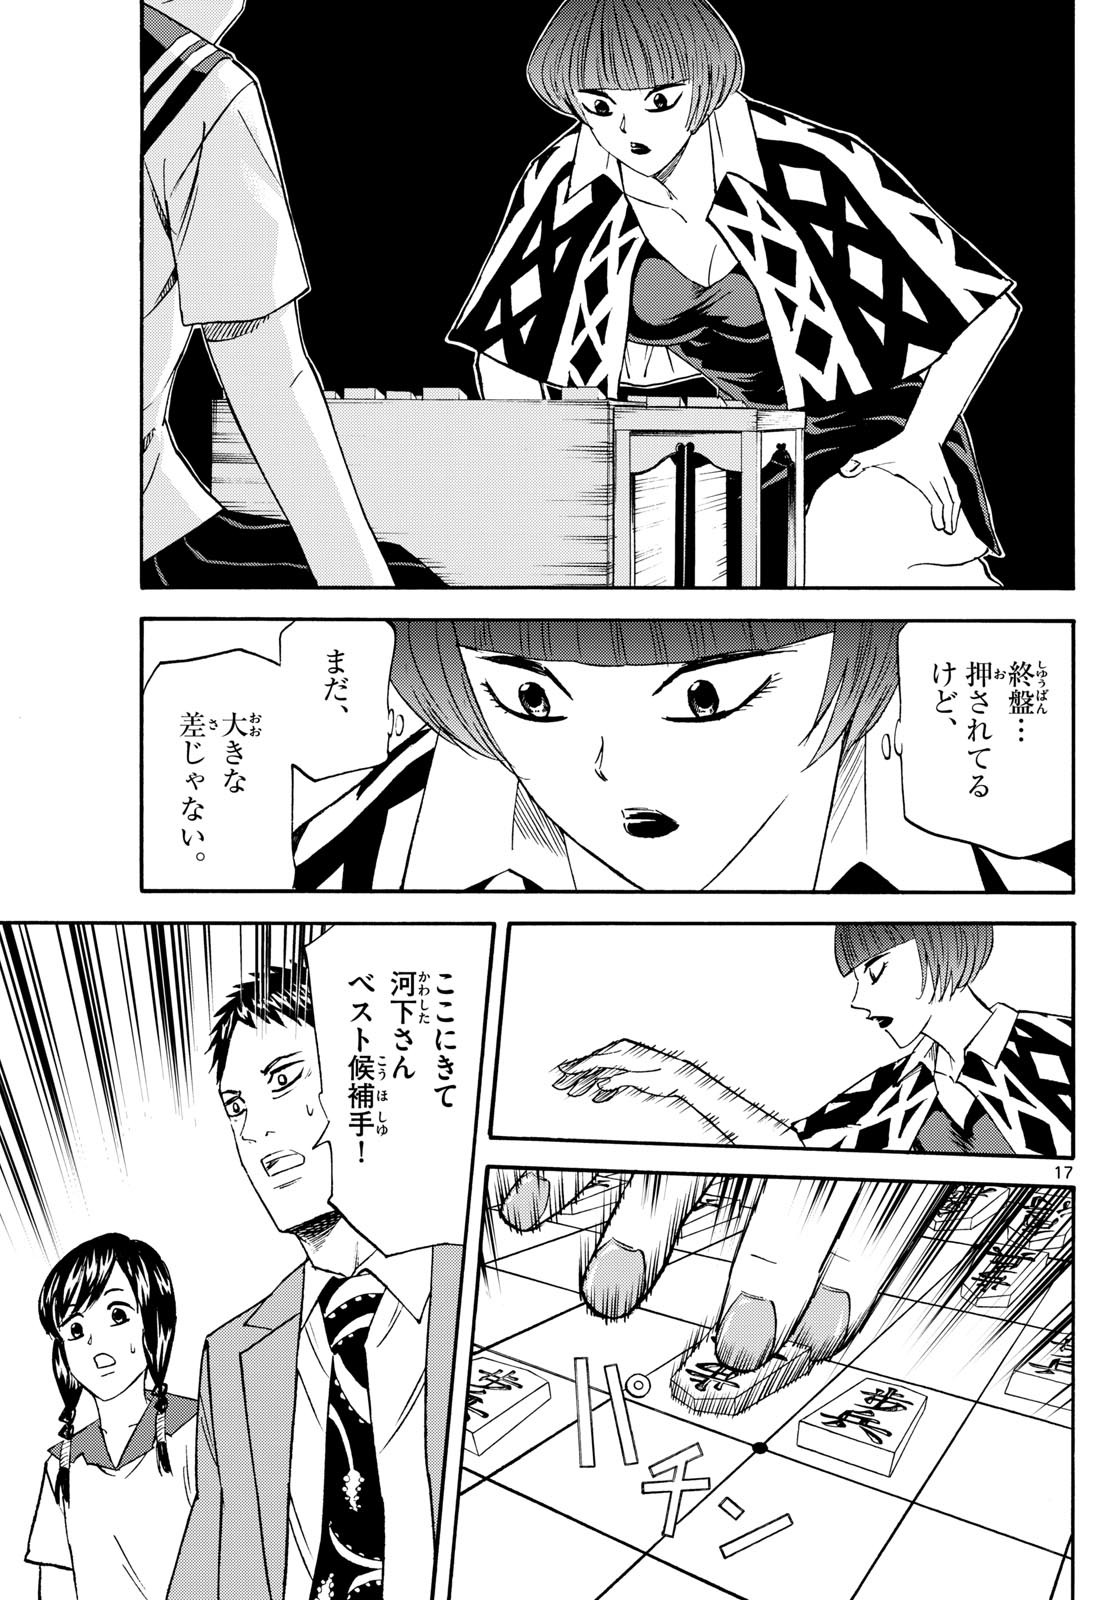 Ryu-to-Ichigo - Chapter 200 - Page 17